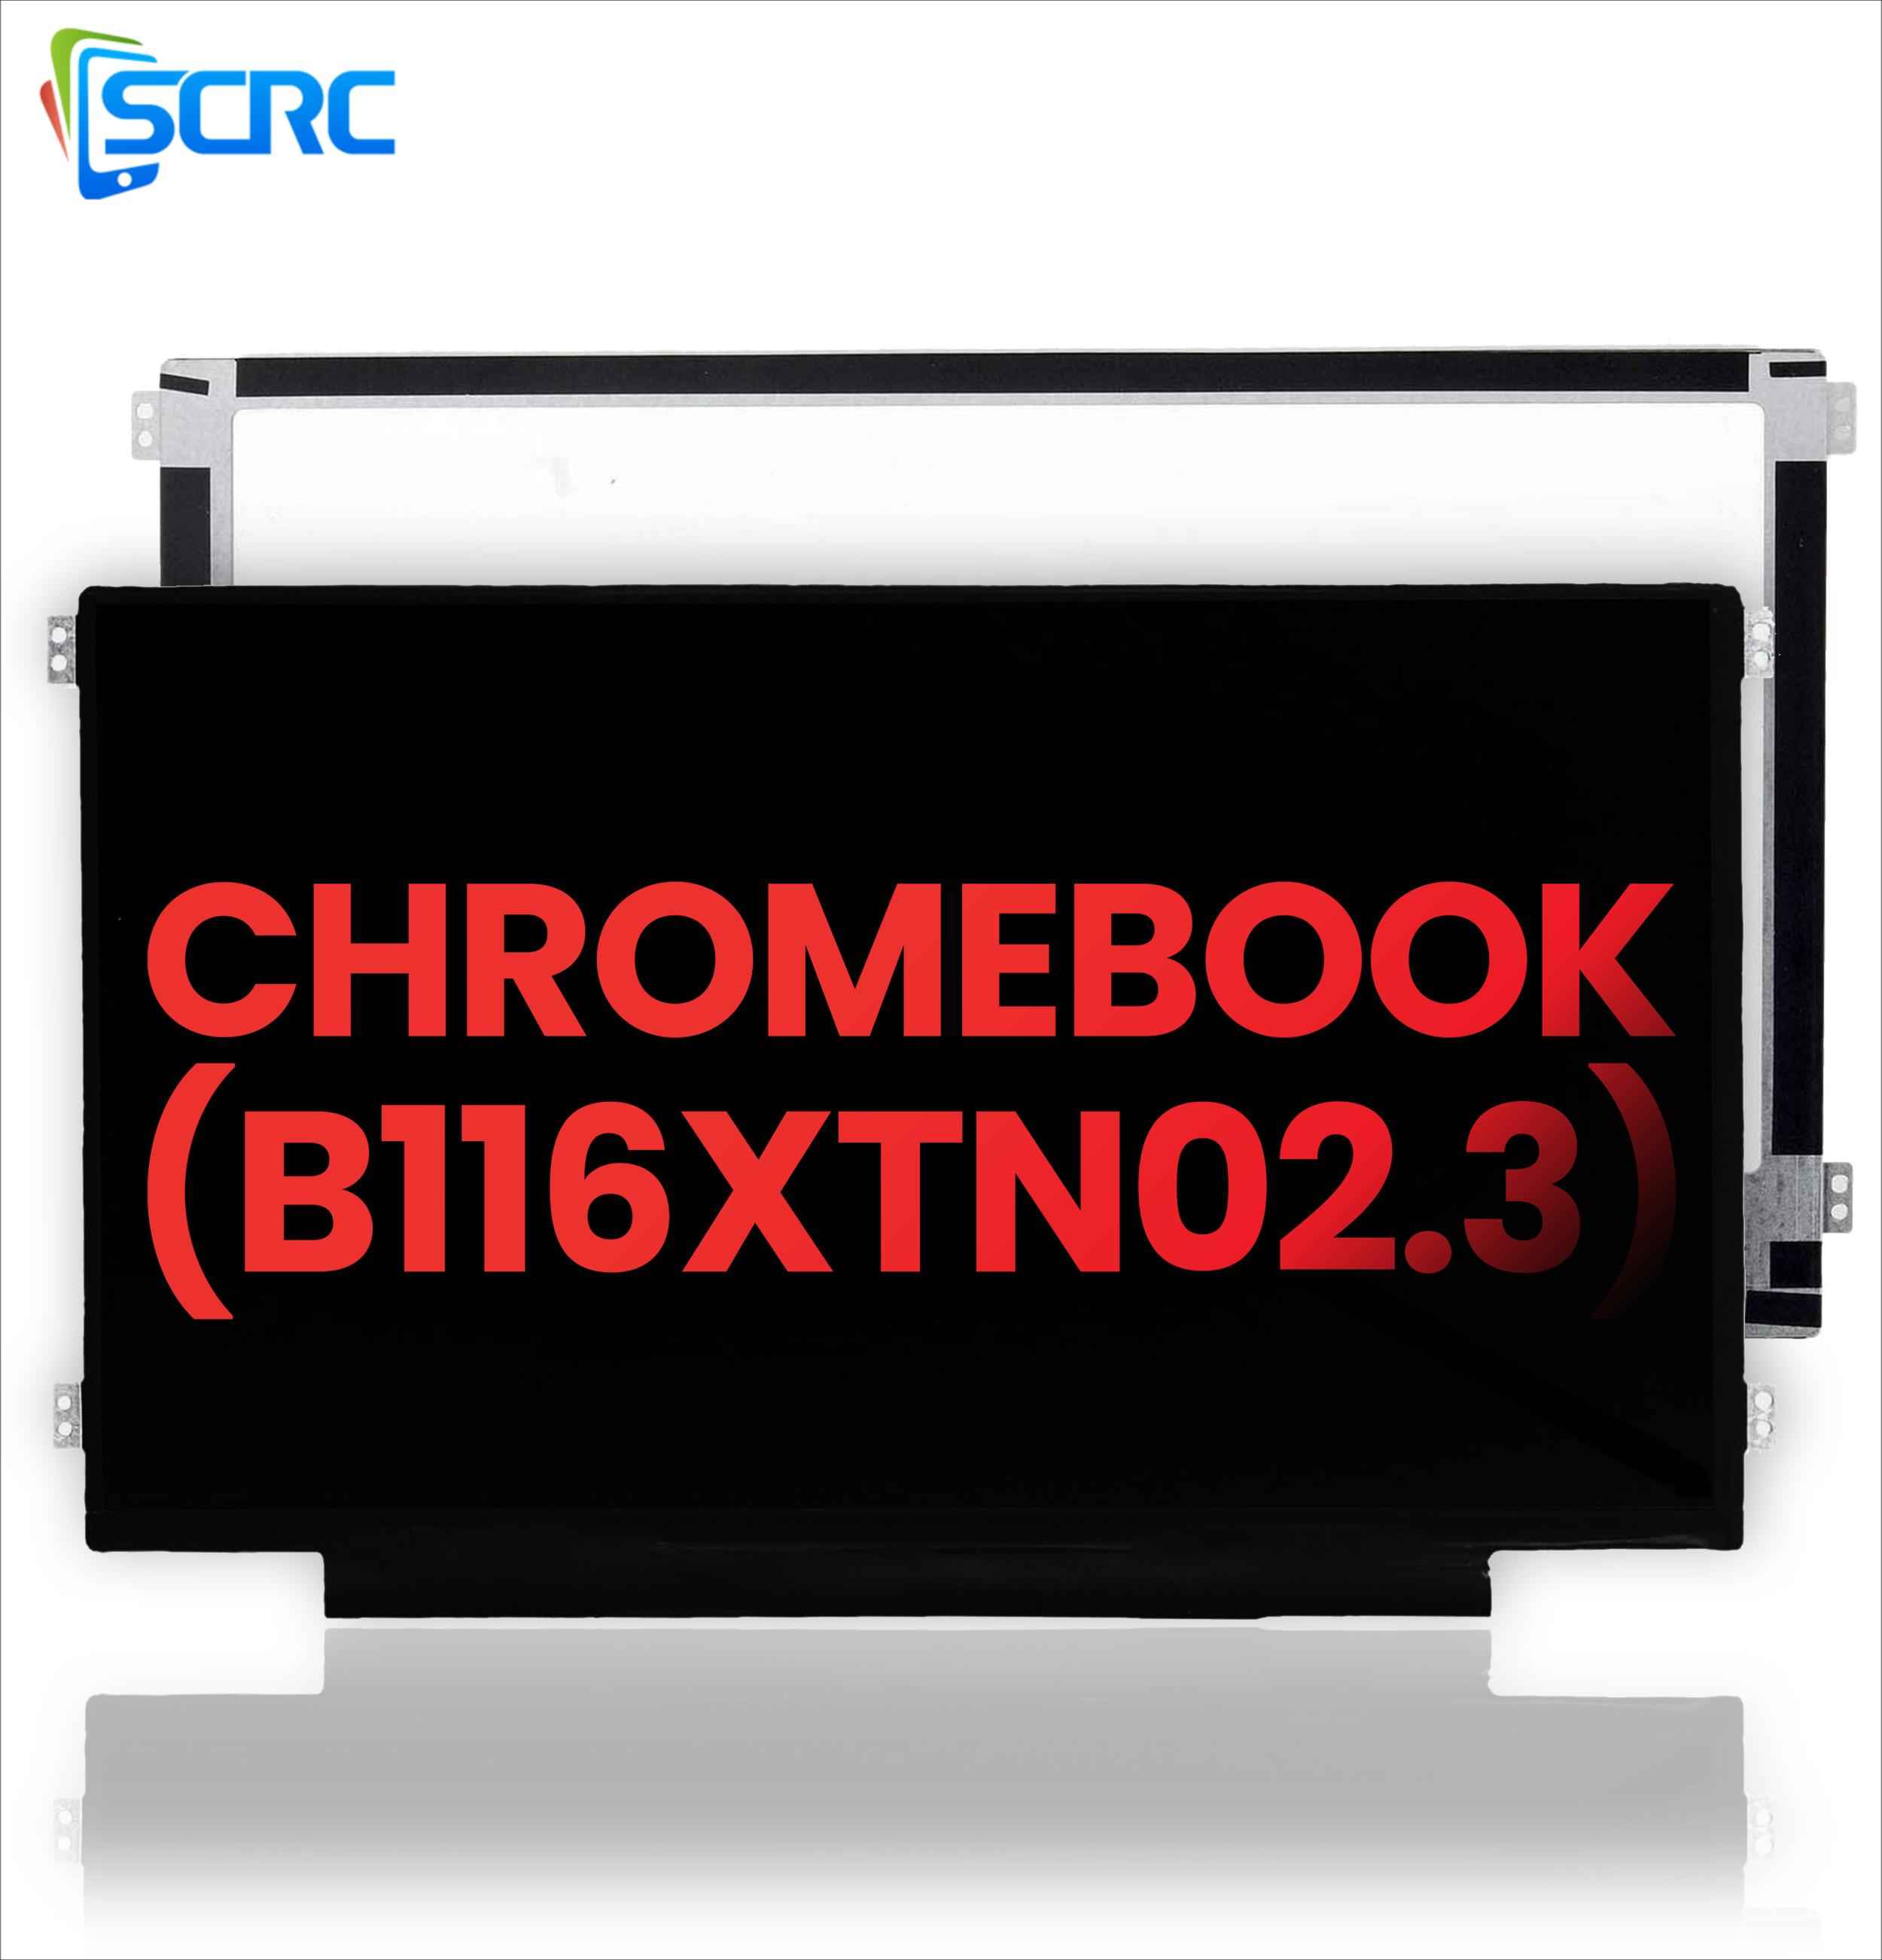 DELL Chromebook B116XTN02.3 এর জন্য LCD স্ক্রিন প্রতিস্থাপন - 0 